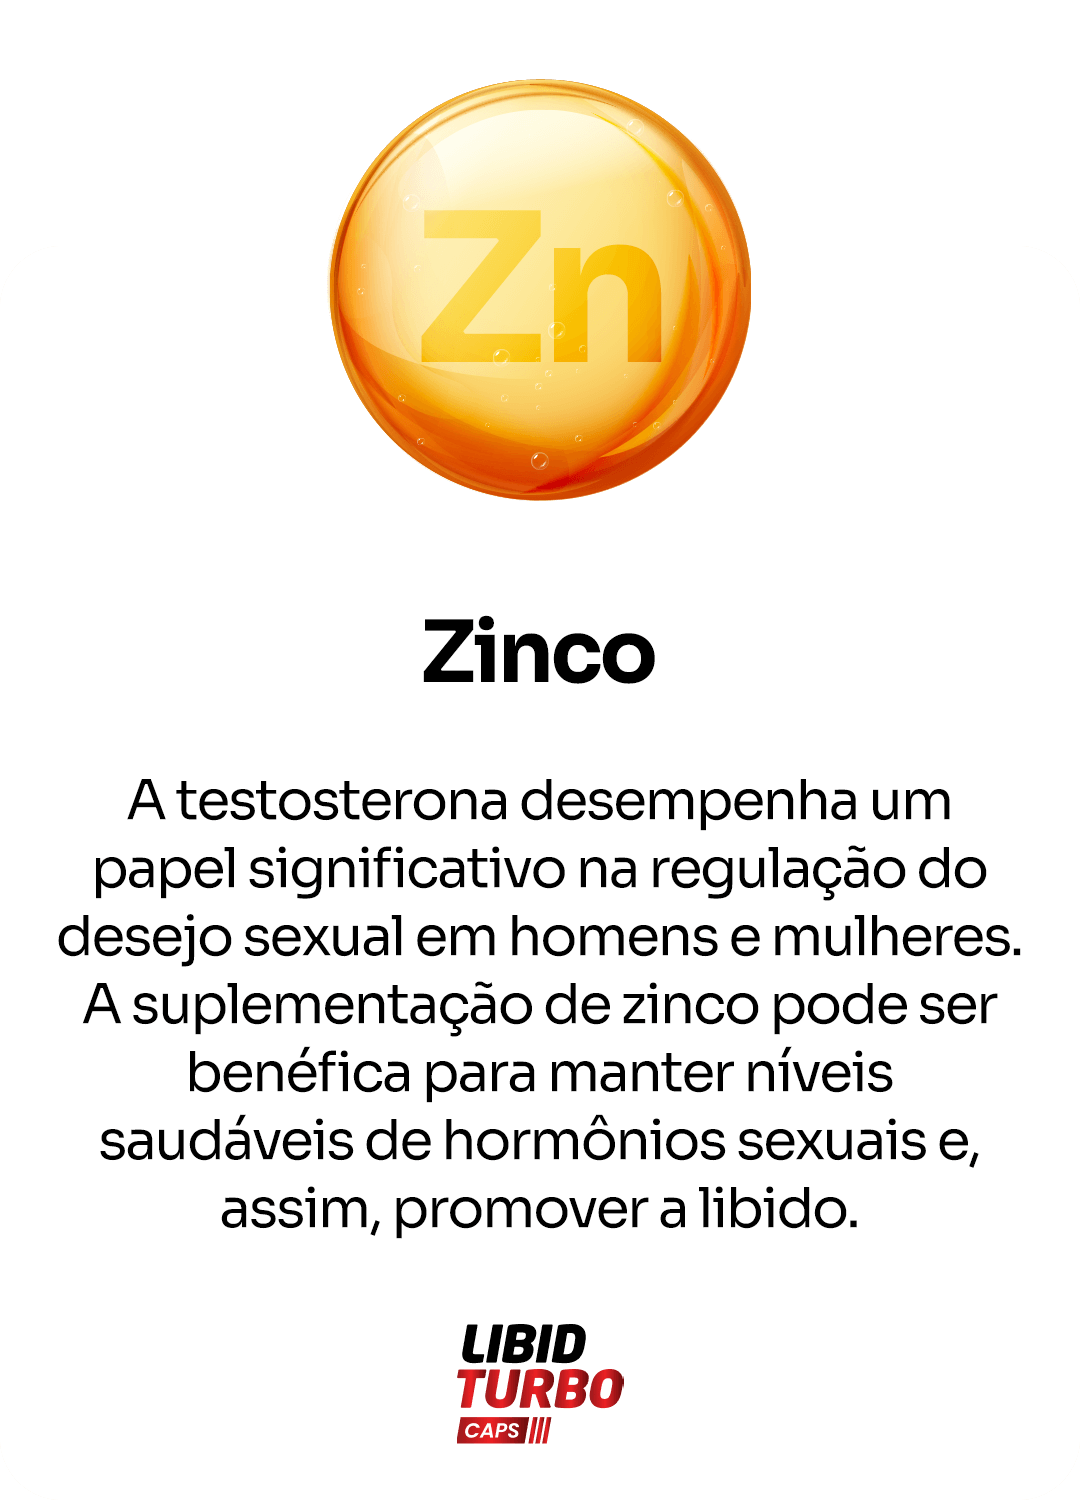 Zinco-1.png